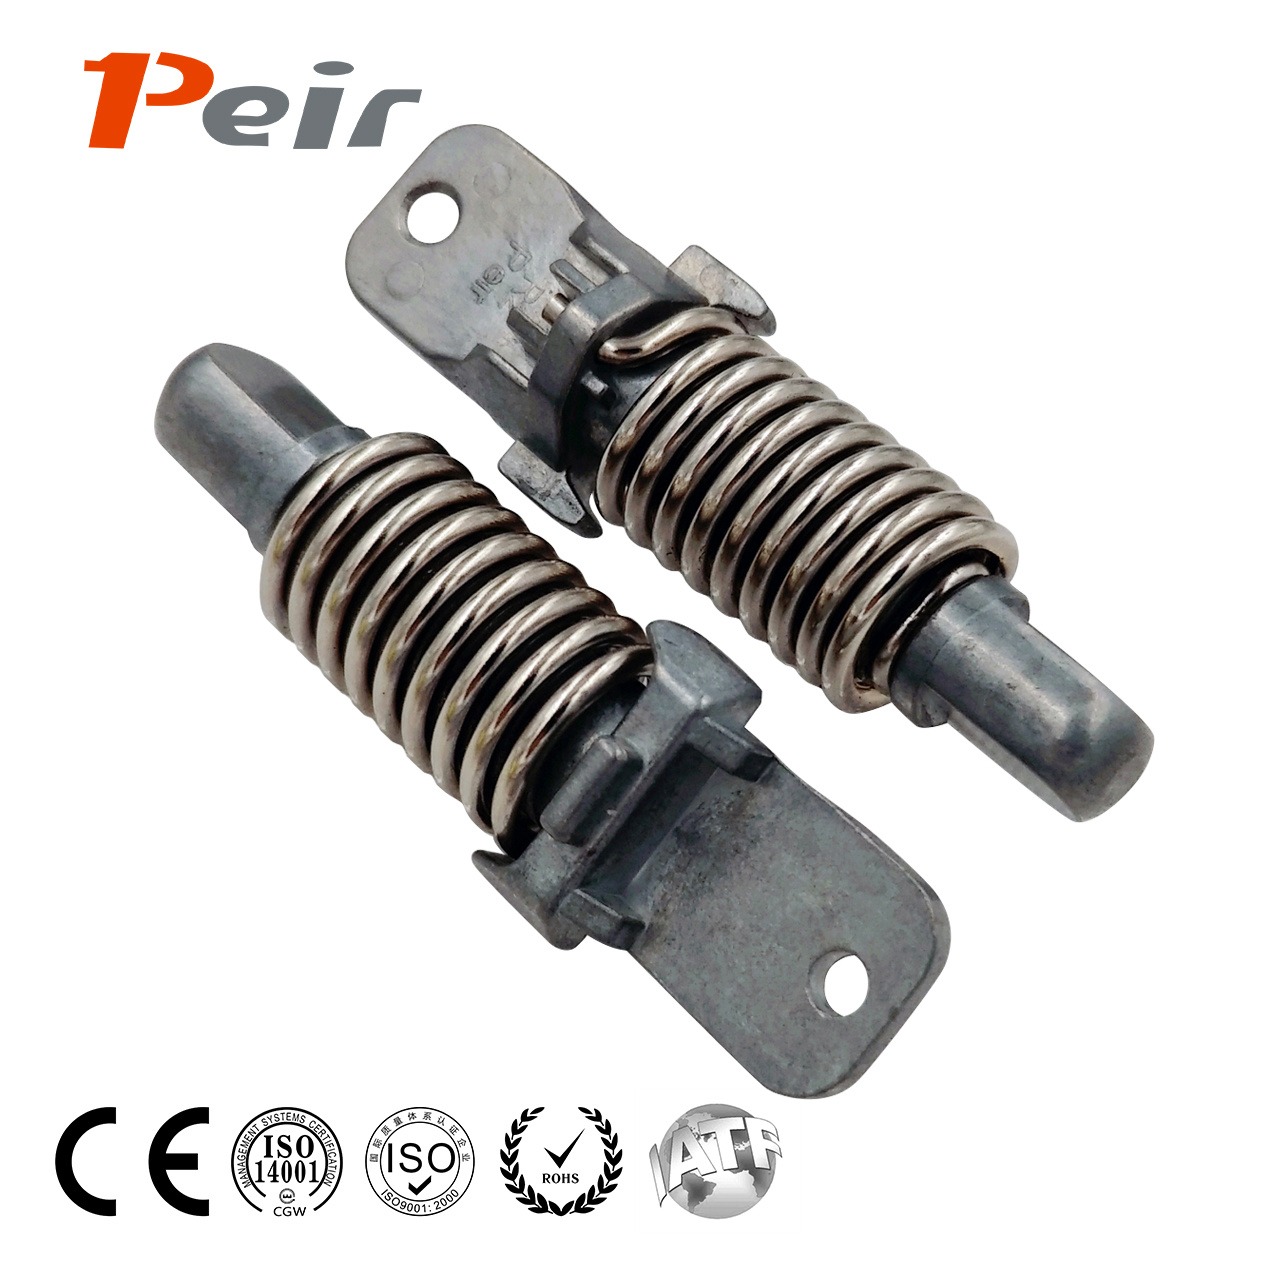 培尔 peir PR-T099G 减速吸振缓冲器 液压阻尼稳速器 弹簧减震阻尼器 弹簧缓冲器